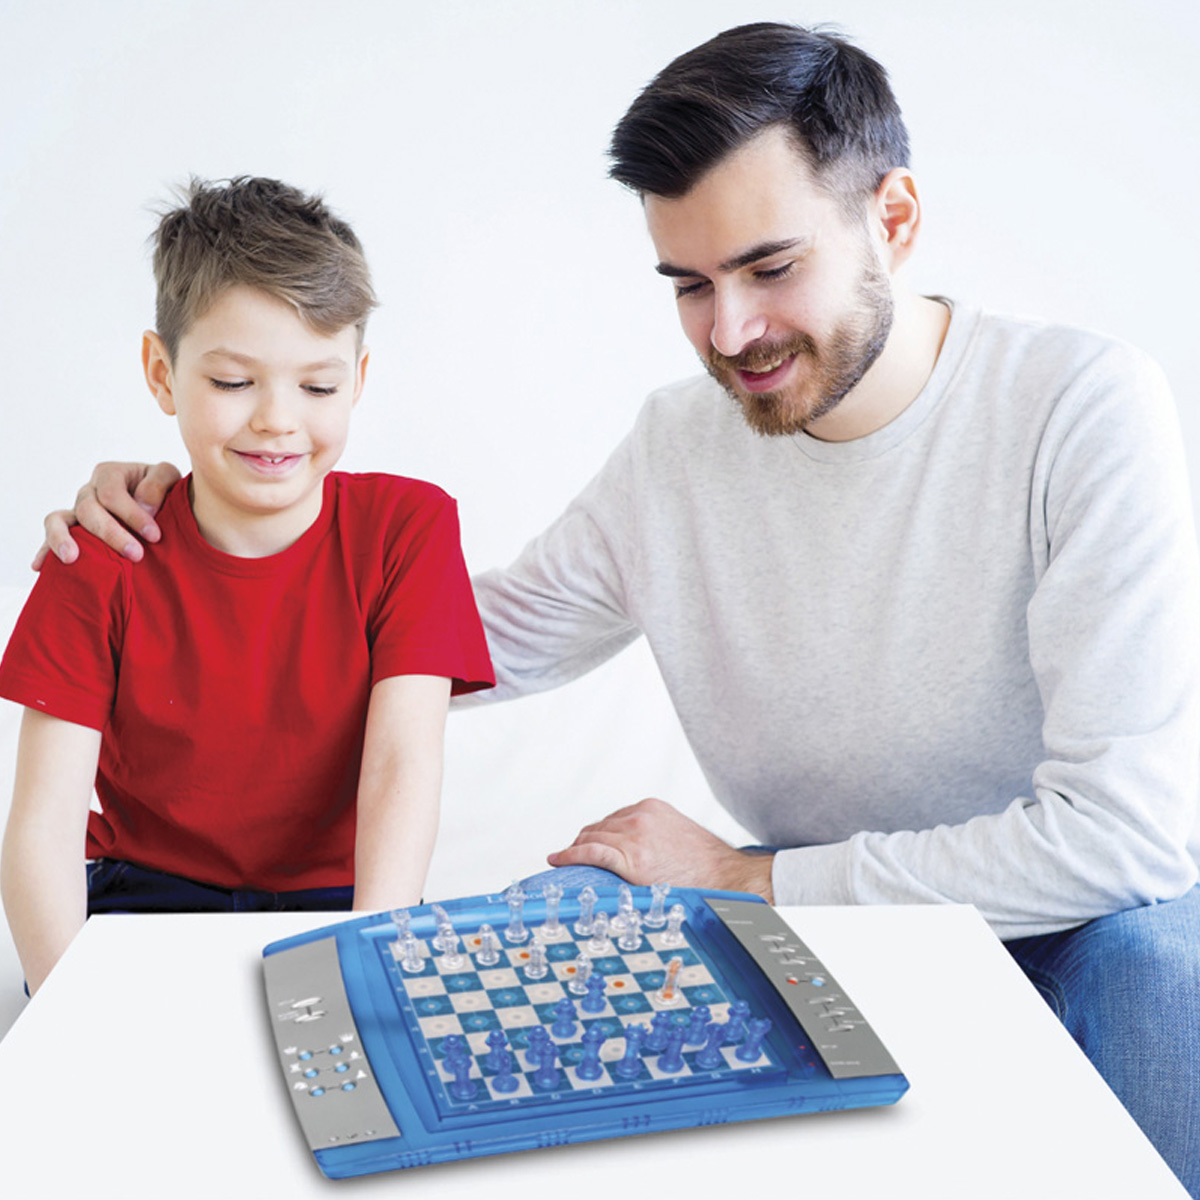 ChessLight® Blau Schachcomputer, LEXIBOOK